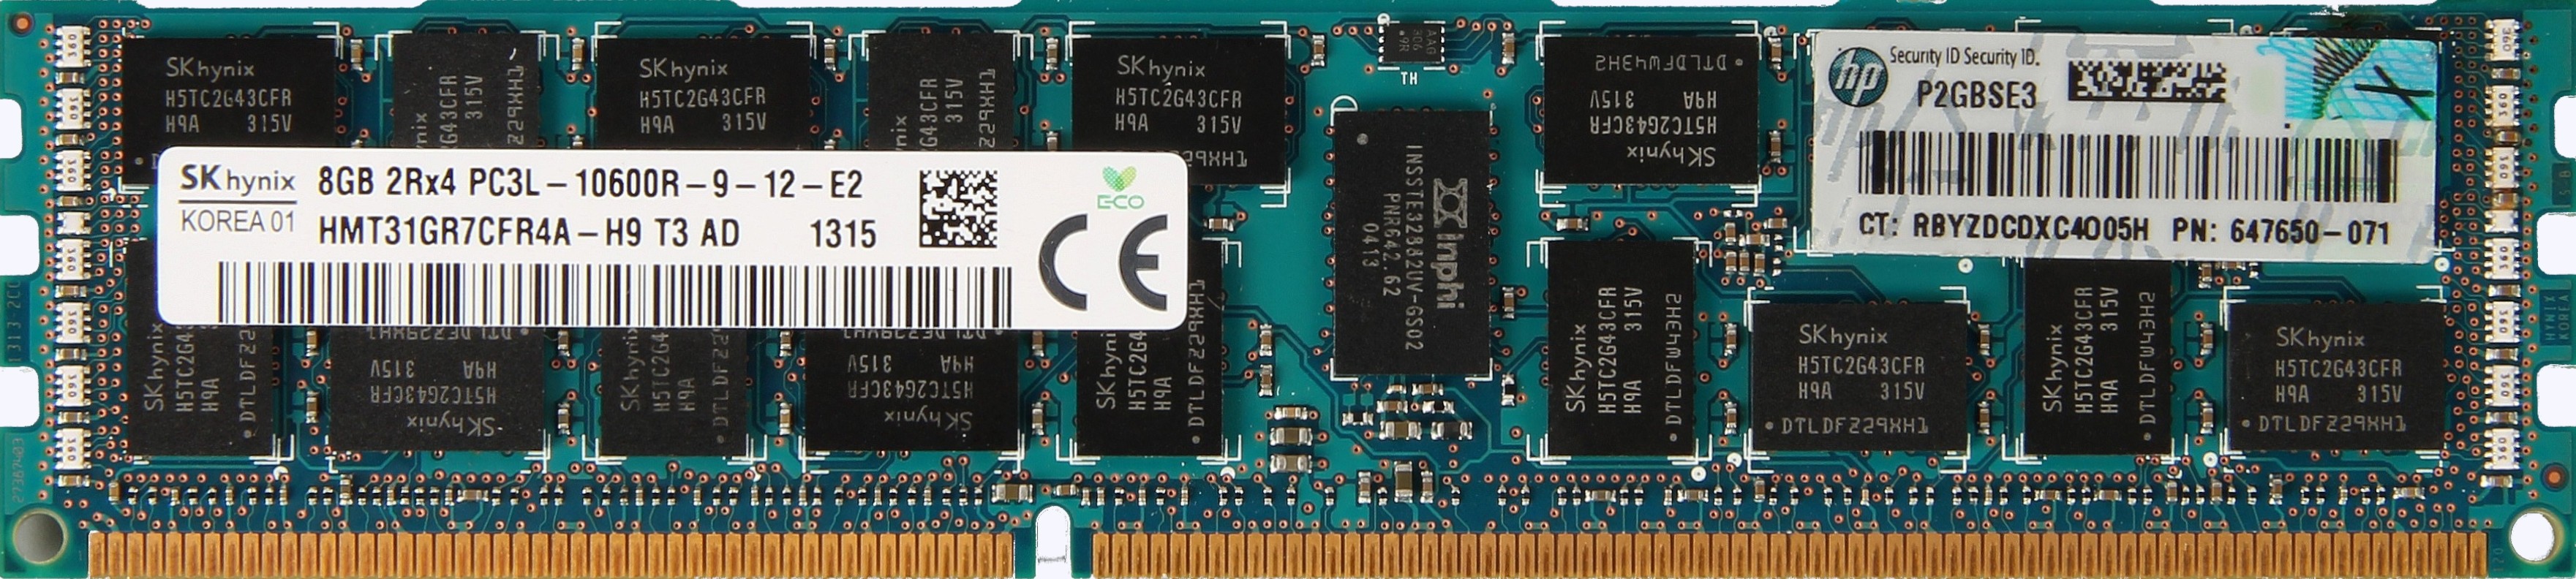 HP (647650-071) - 8GB PC3L-10600R (DDR3-1333Mhz, 2RX4)